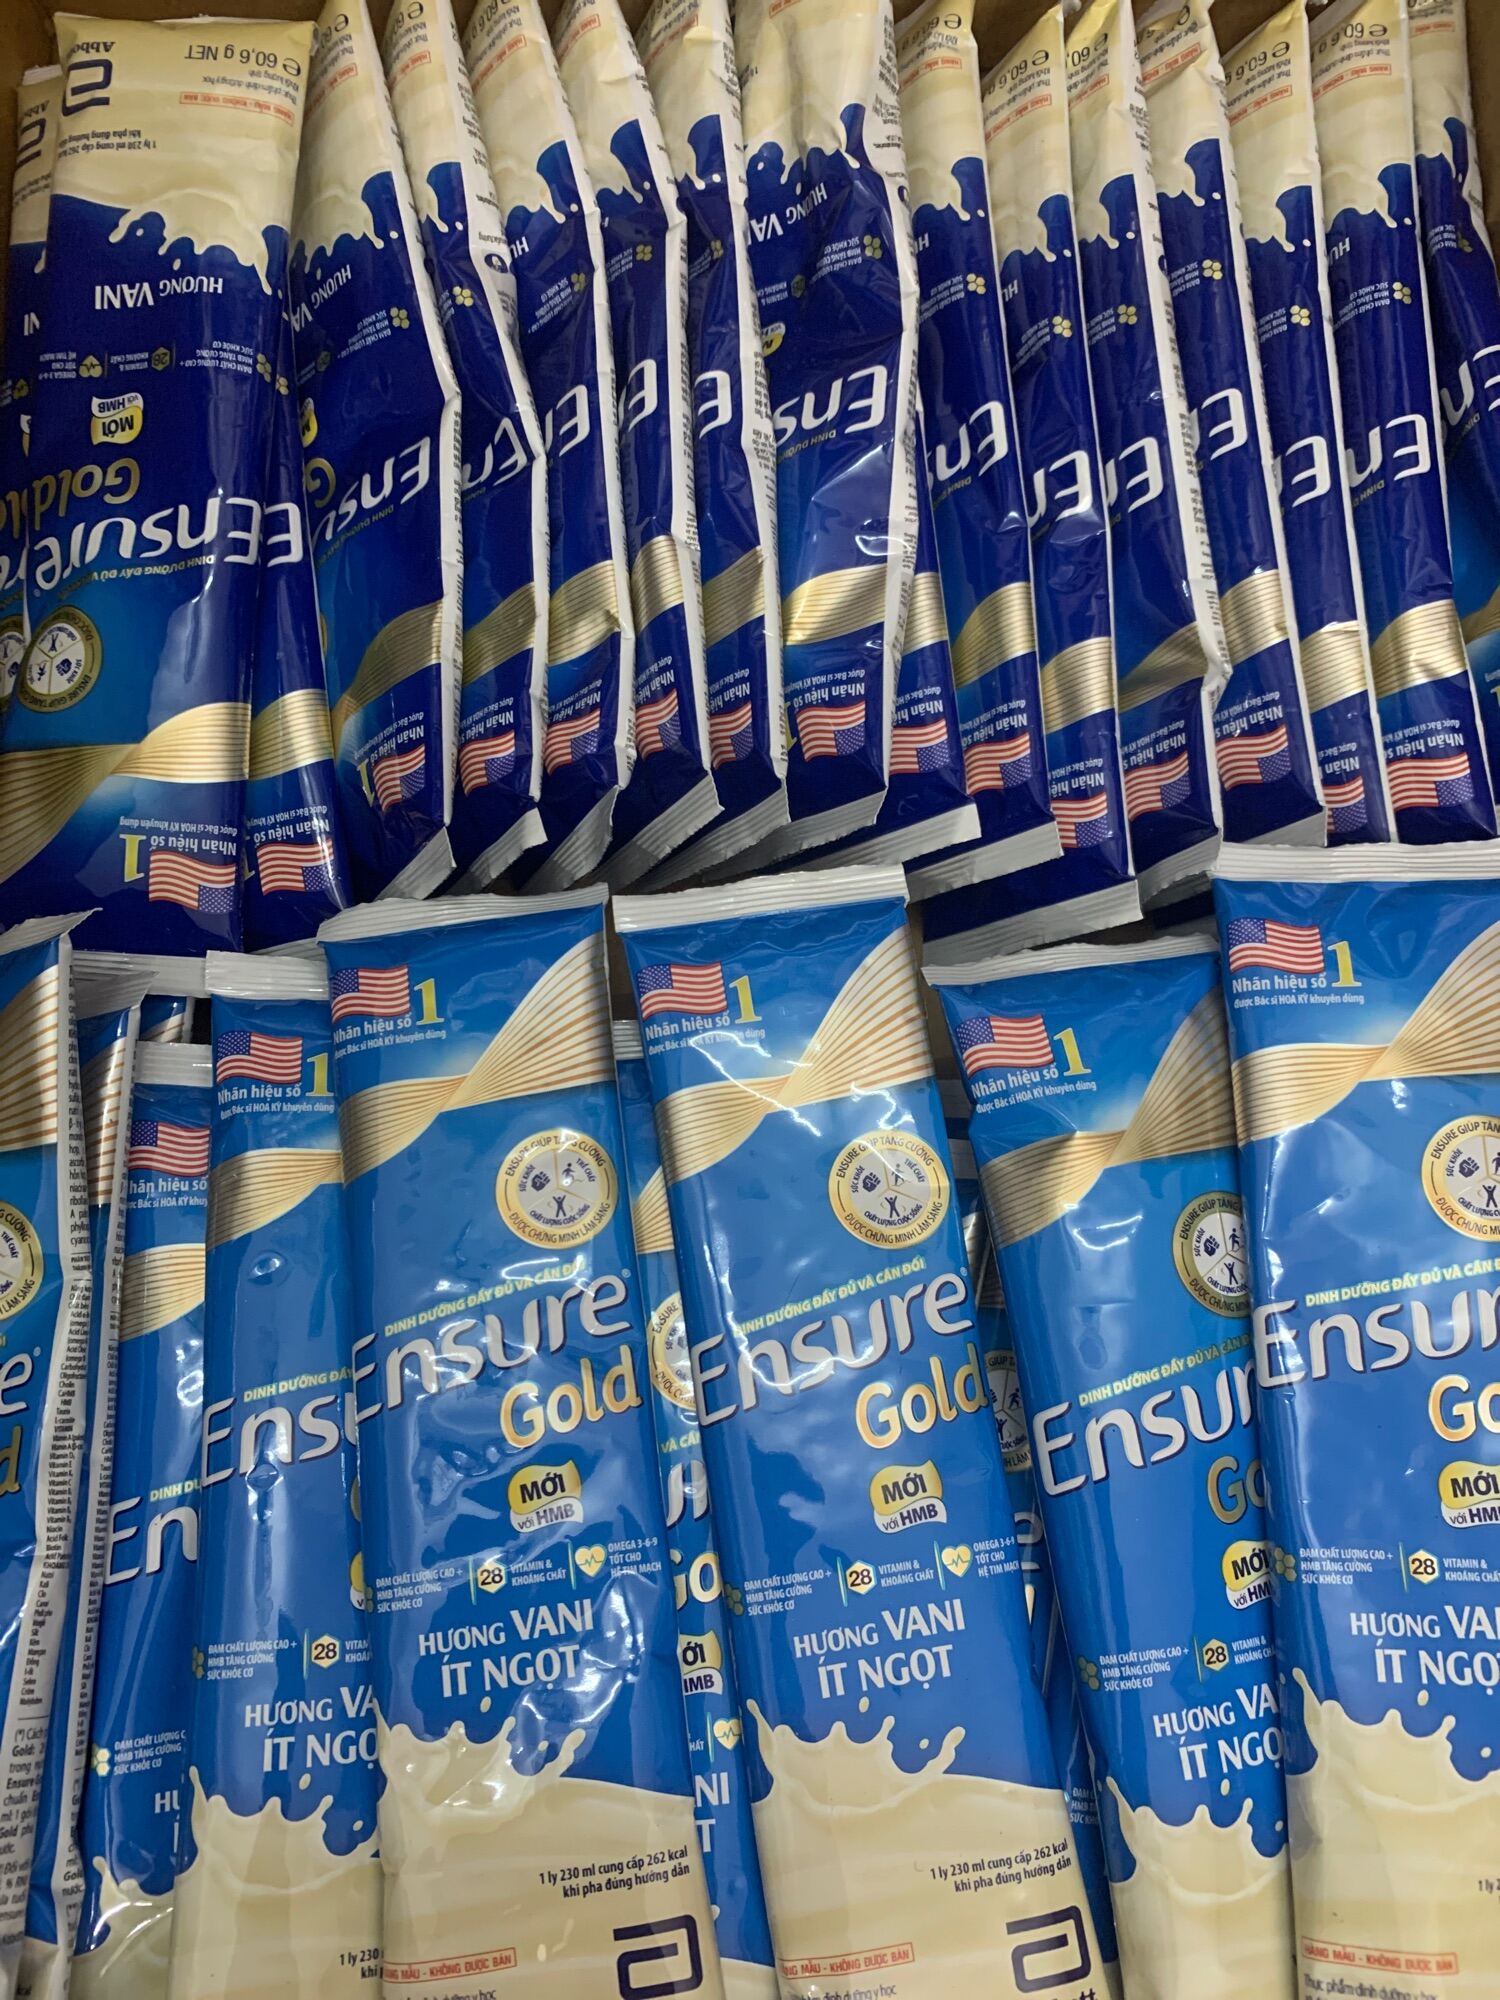 Sữa gói Ensure gold 60,6g